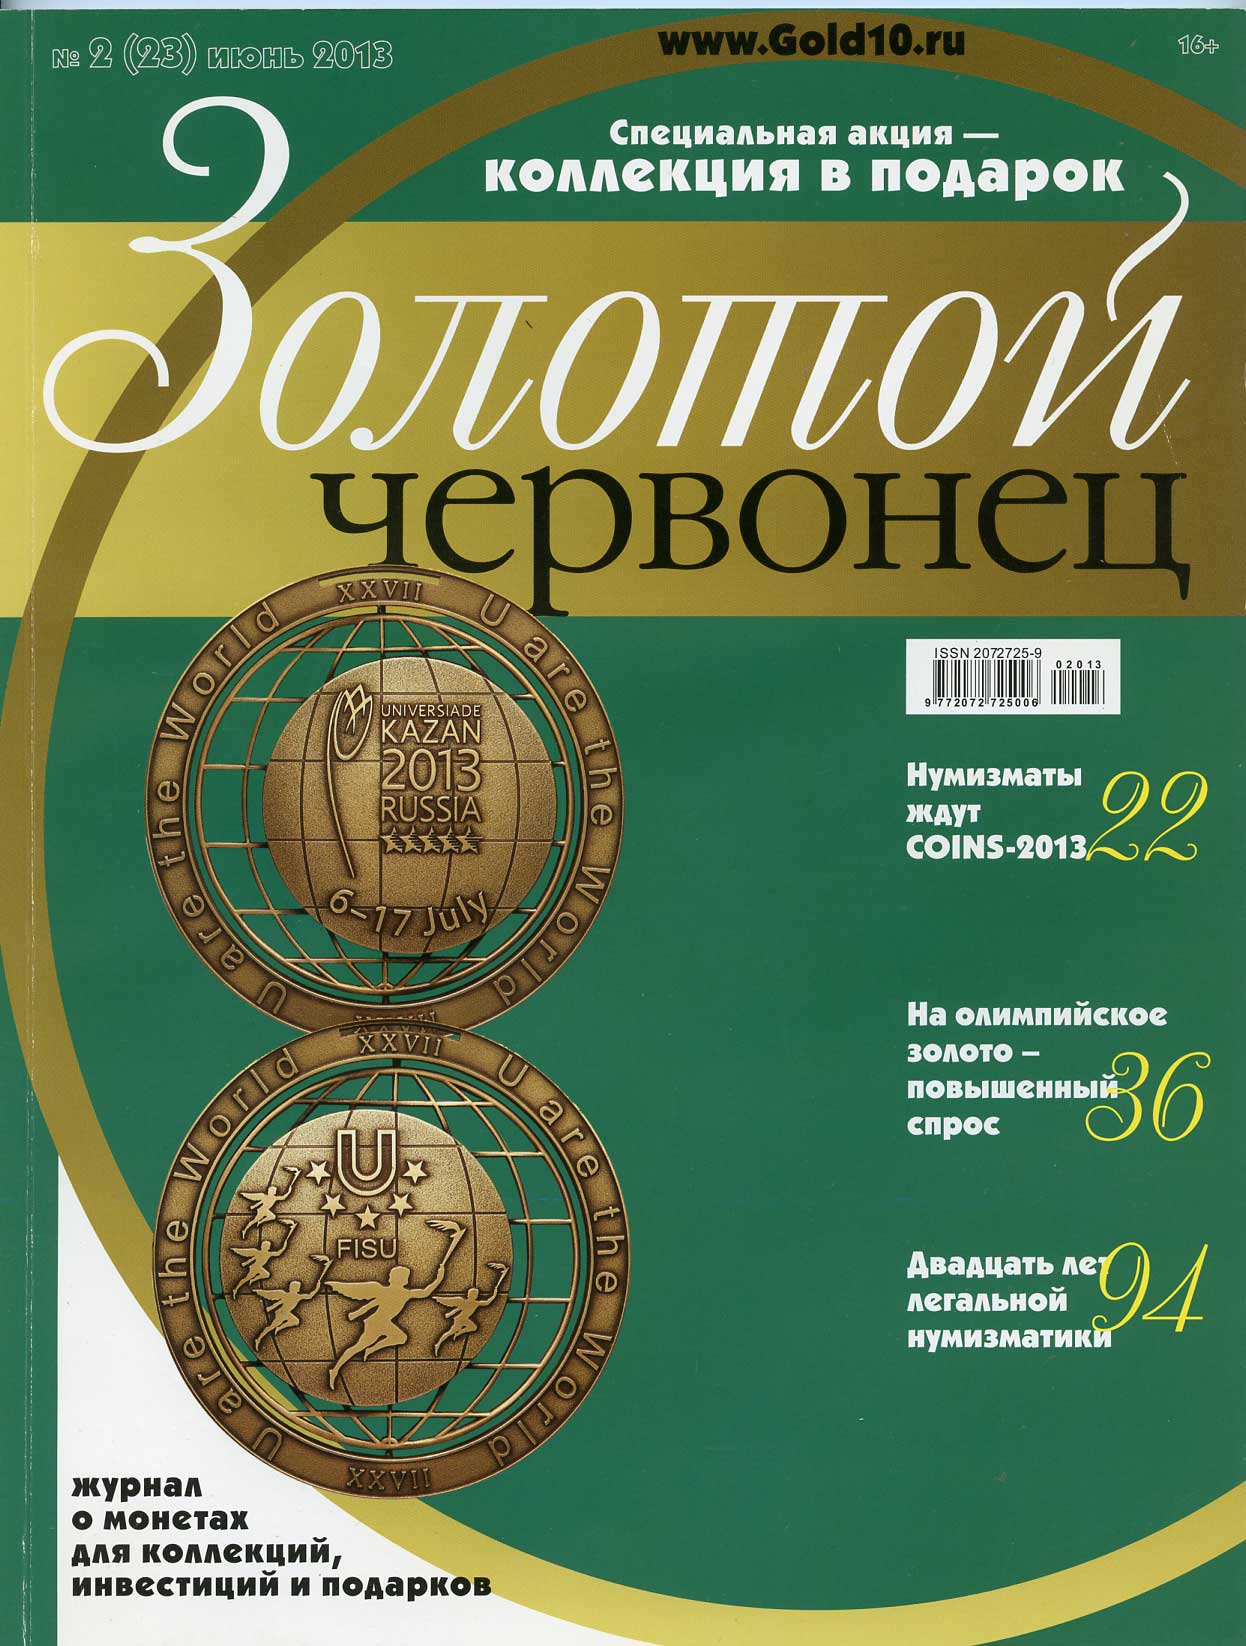 Журнал Золотой червонец № 2 (23) июнь 2013 00-01-26-14: цены, купить внумизматическом магазине «Рашенкойн»